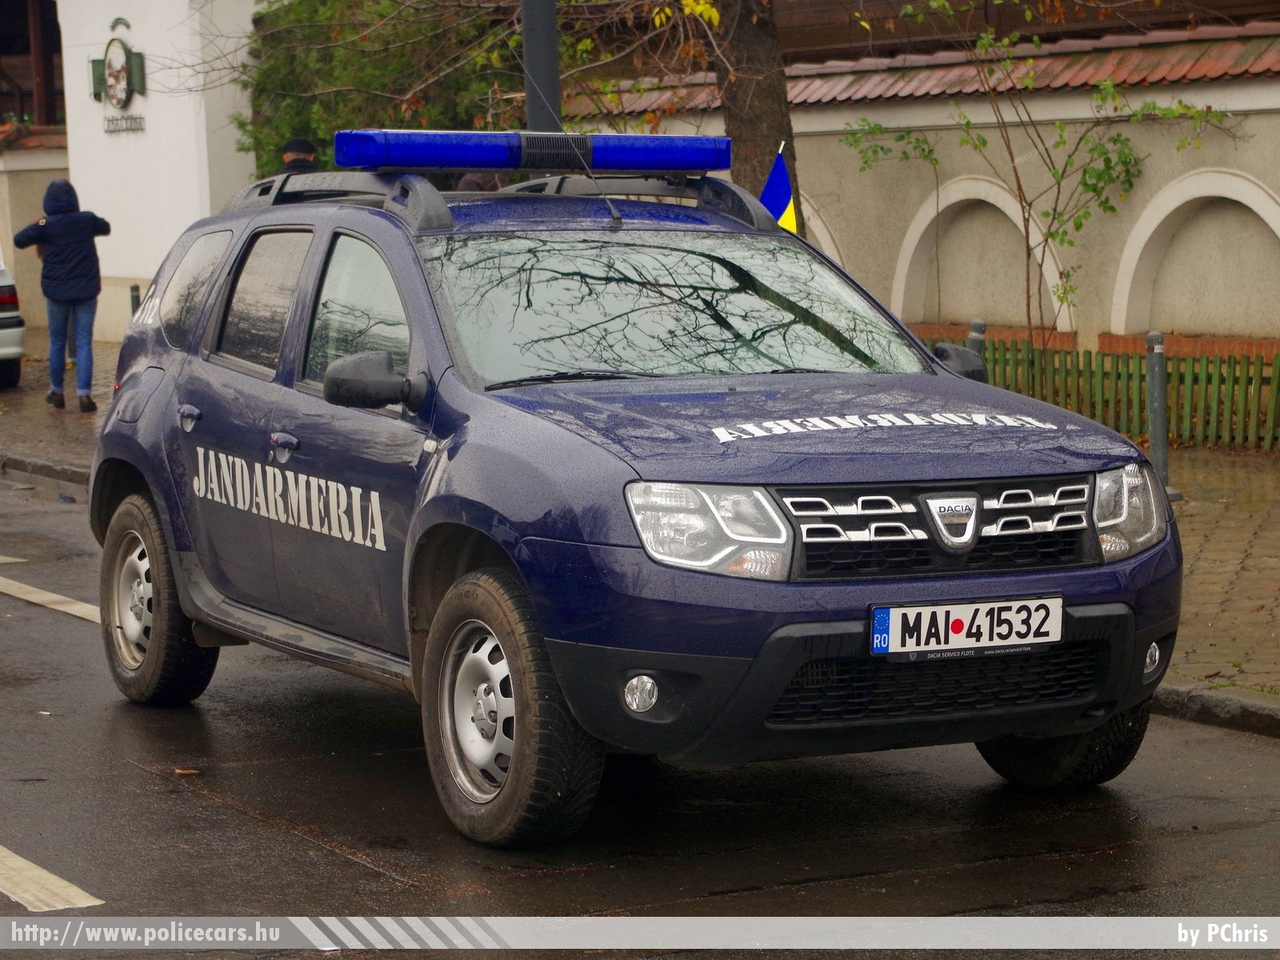 Dacia Duster, fotó: PChris
Keywords: jandarmeria rendőr rendőrautó rendőrség román Románia csendőrség 